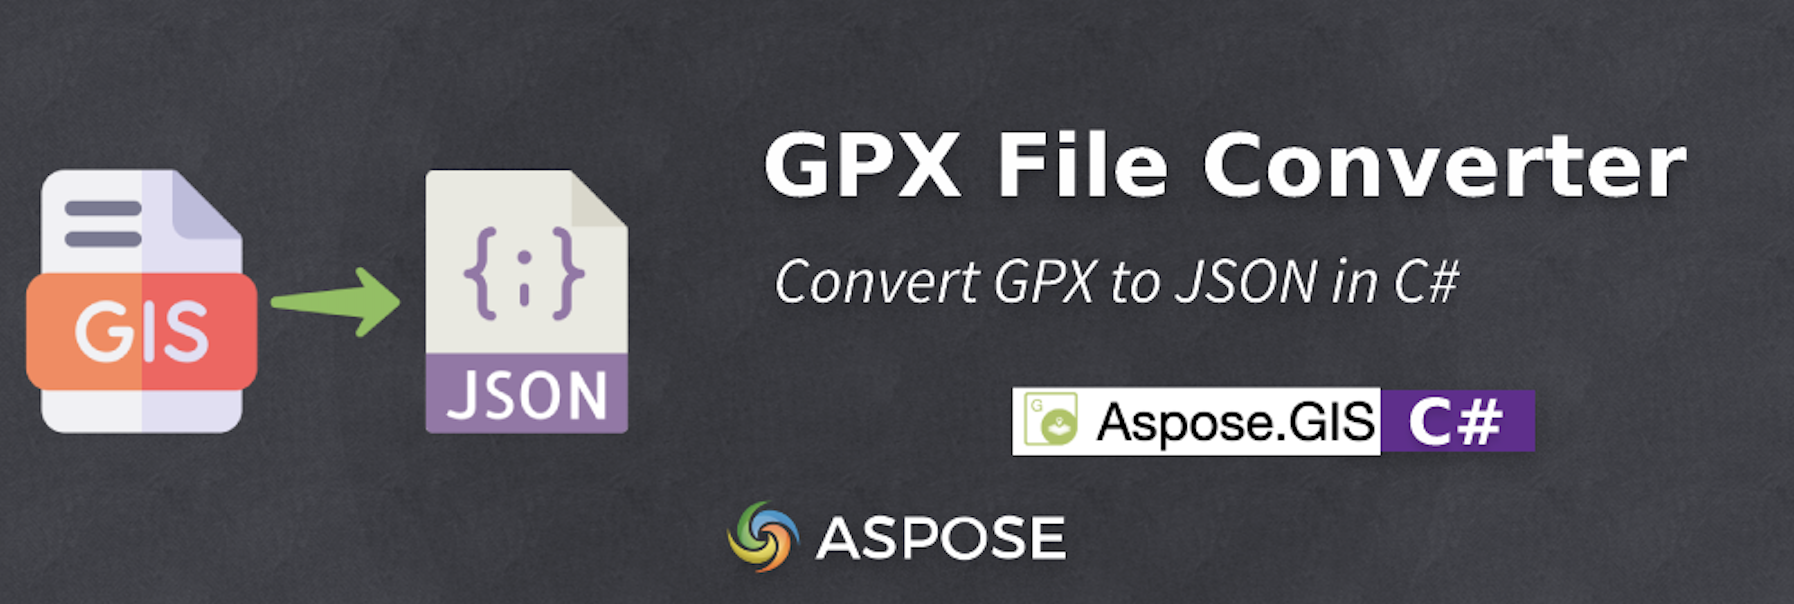 Convierta GPX a JSON en C# - Convertidor de archivos GPX